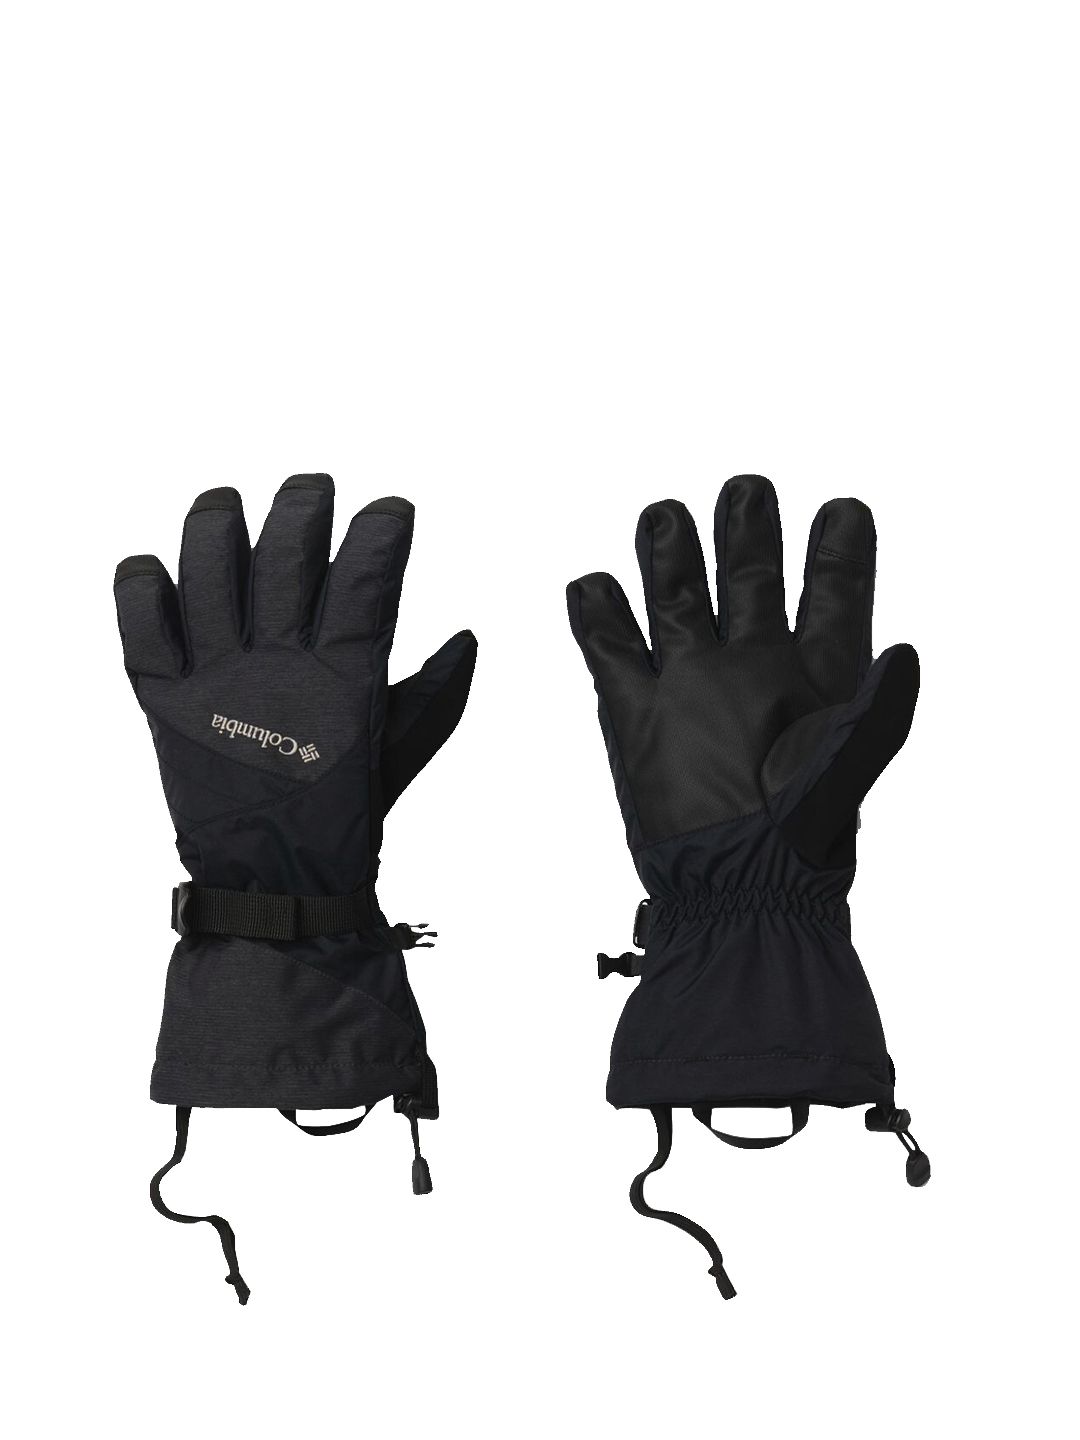 Columbia Women Black Waterproof Bugaboo II Glove Price in India